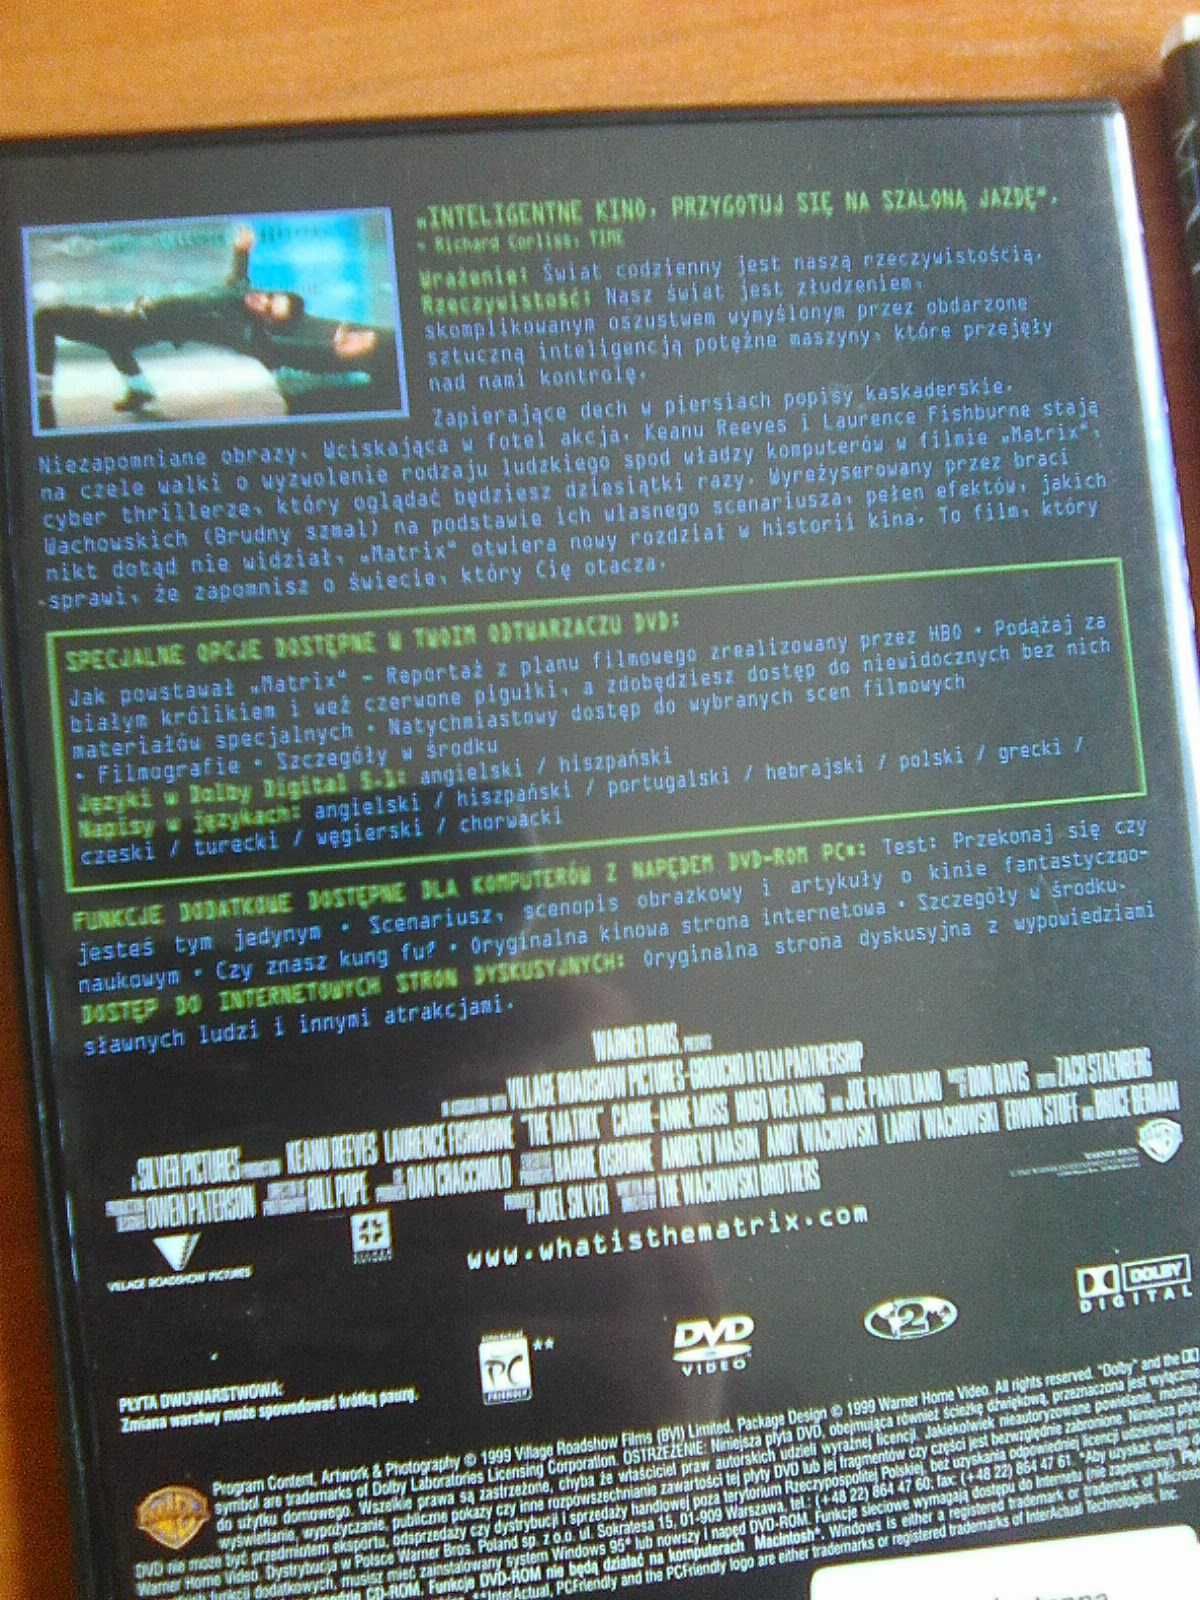 Matrix Trylogia (Matrix Trylogy) (DVD)